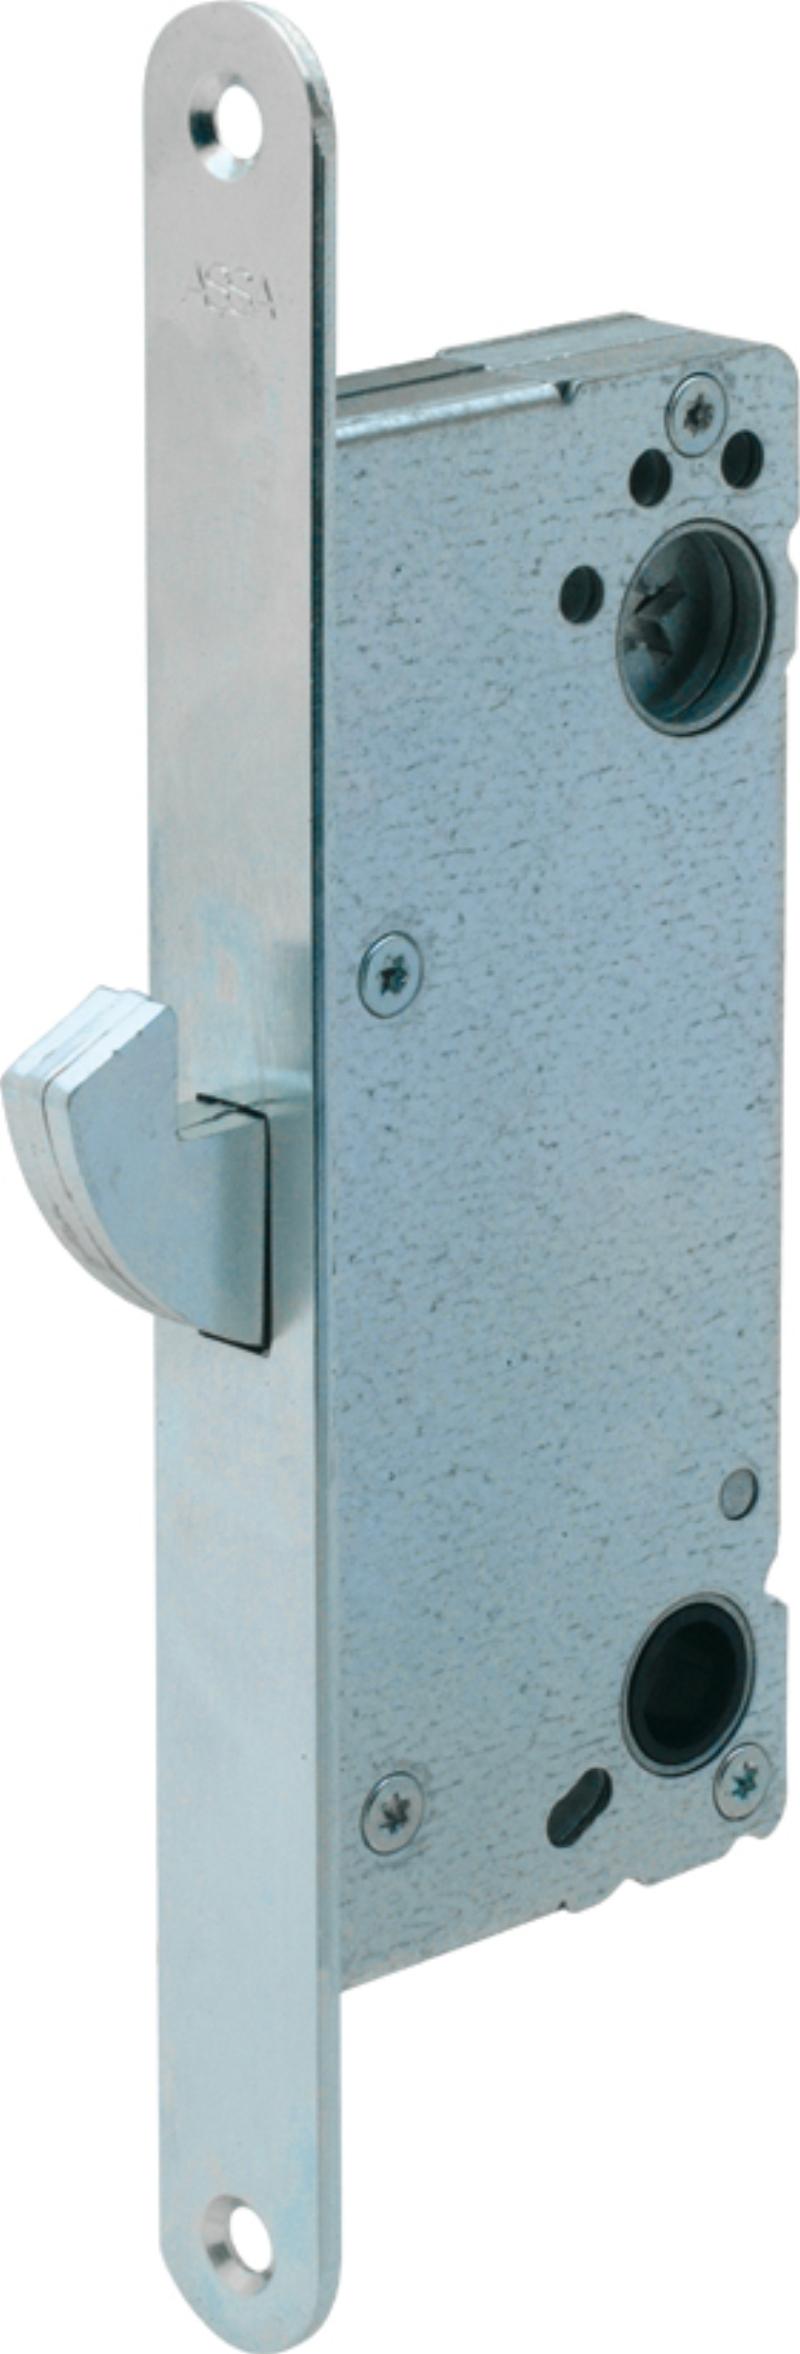 Assa lock box Connect 411 w/micro